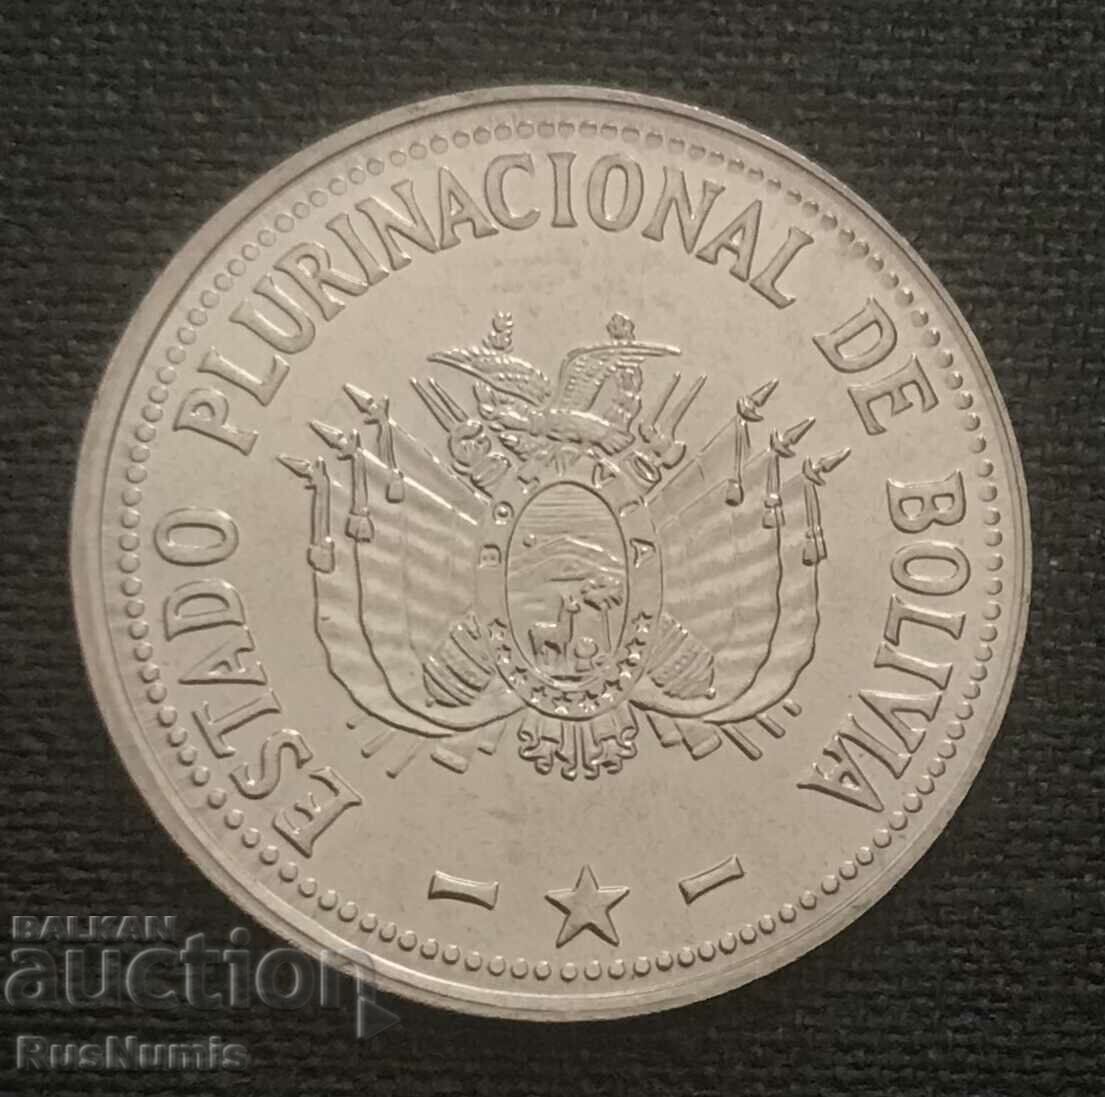 Bolivia. 50 centimes 2012.UNC.